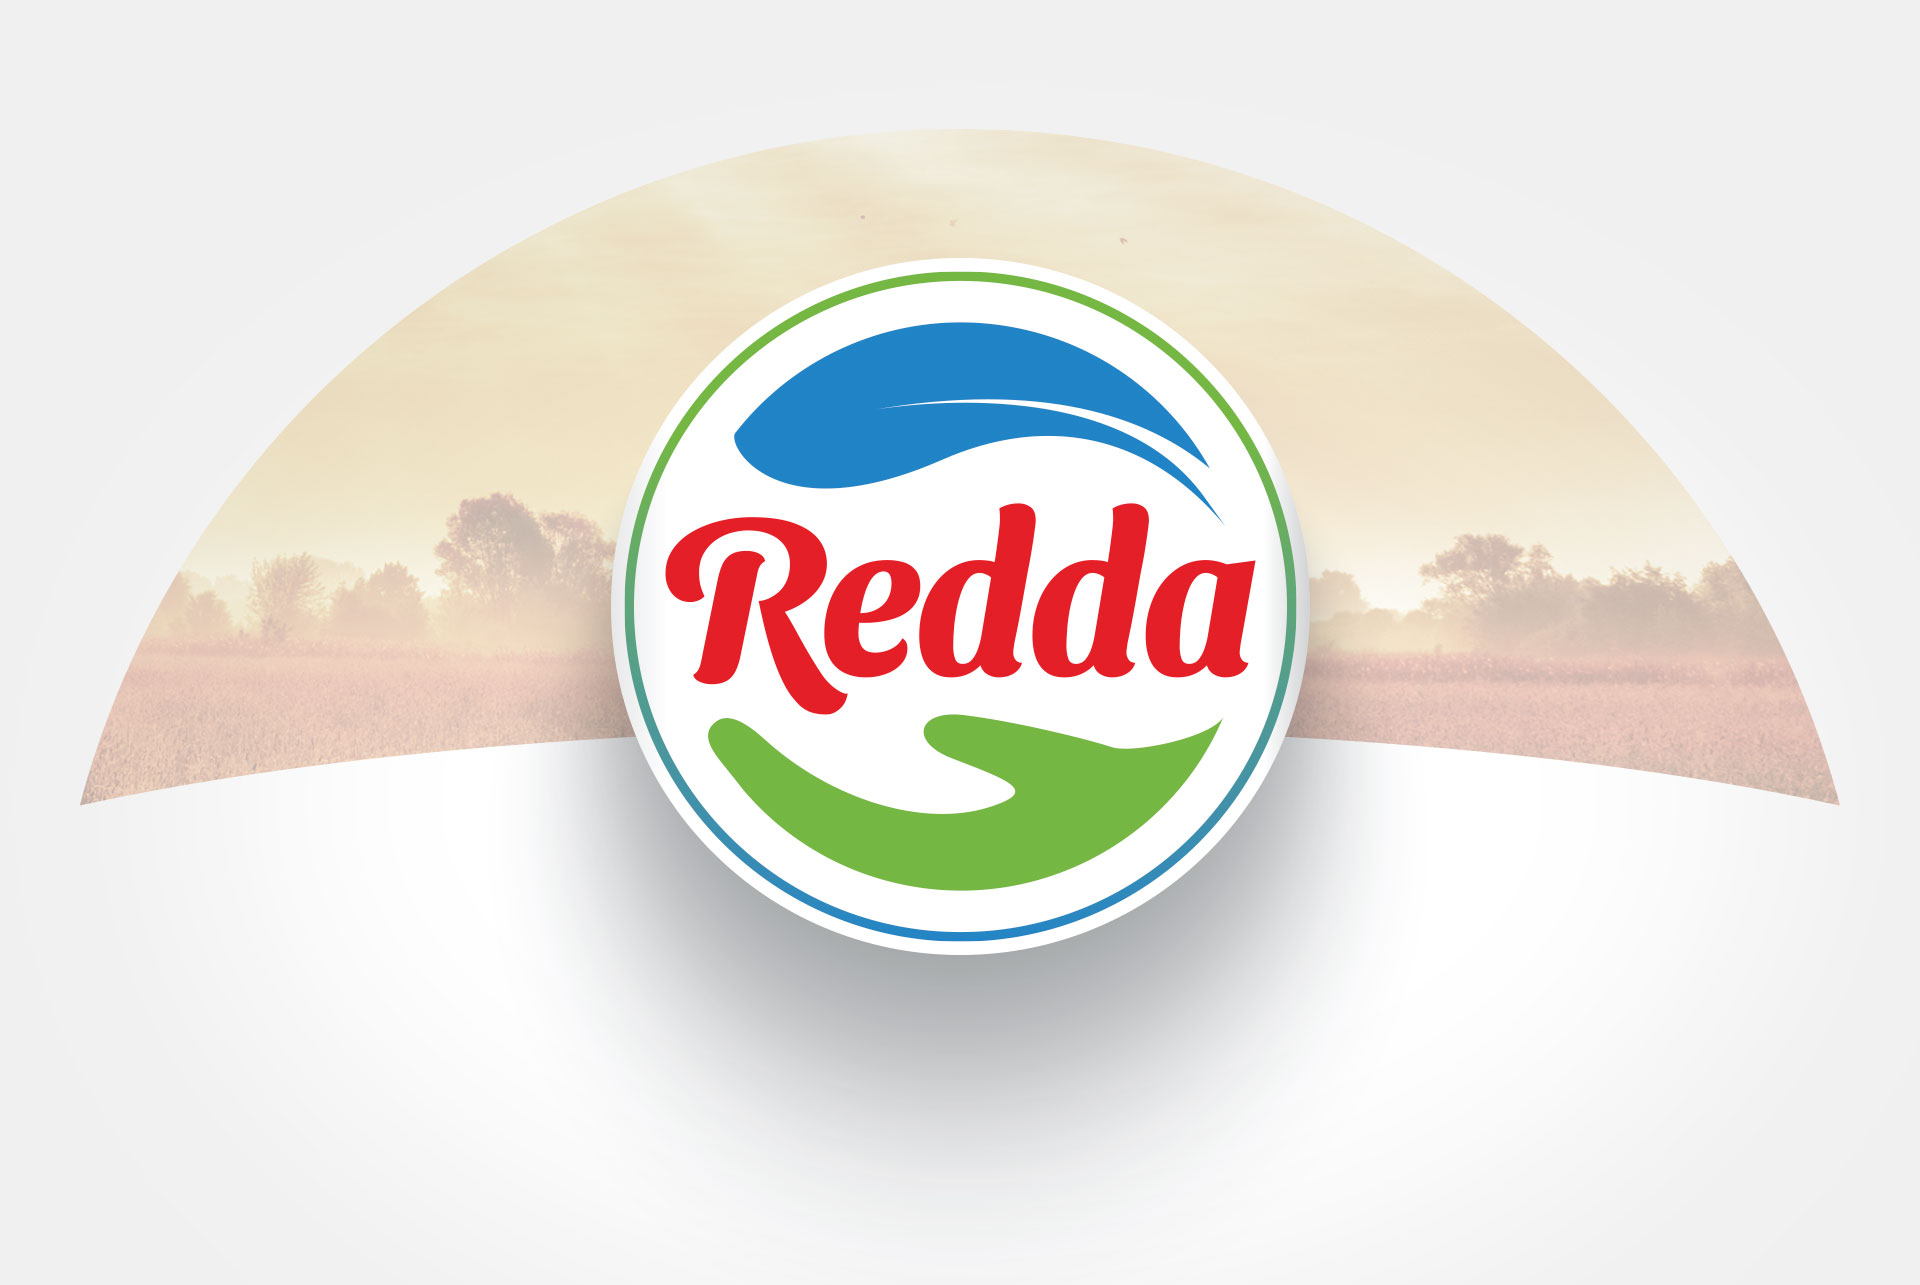 redda_logo2